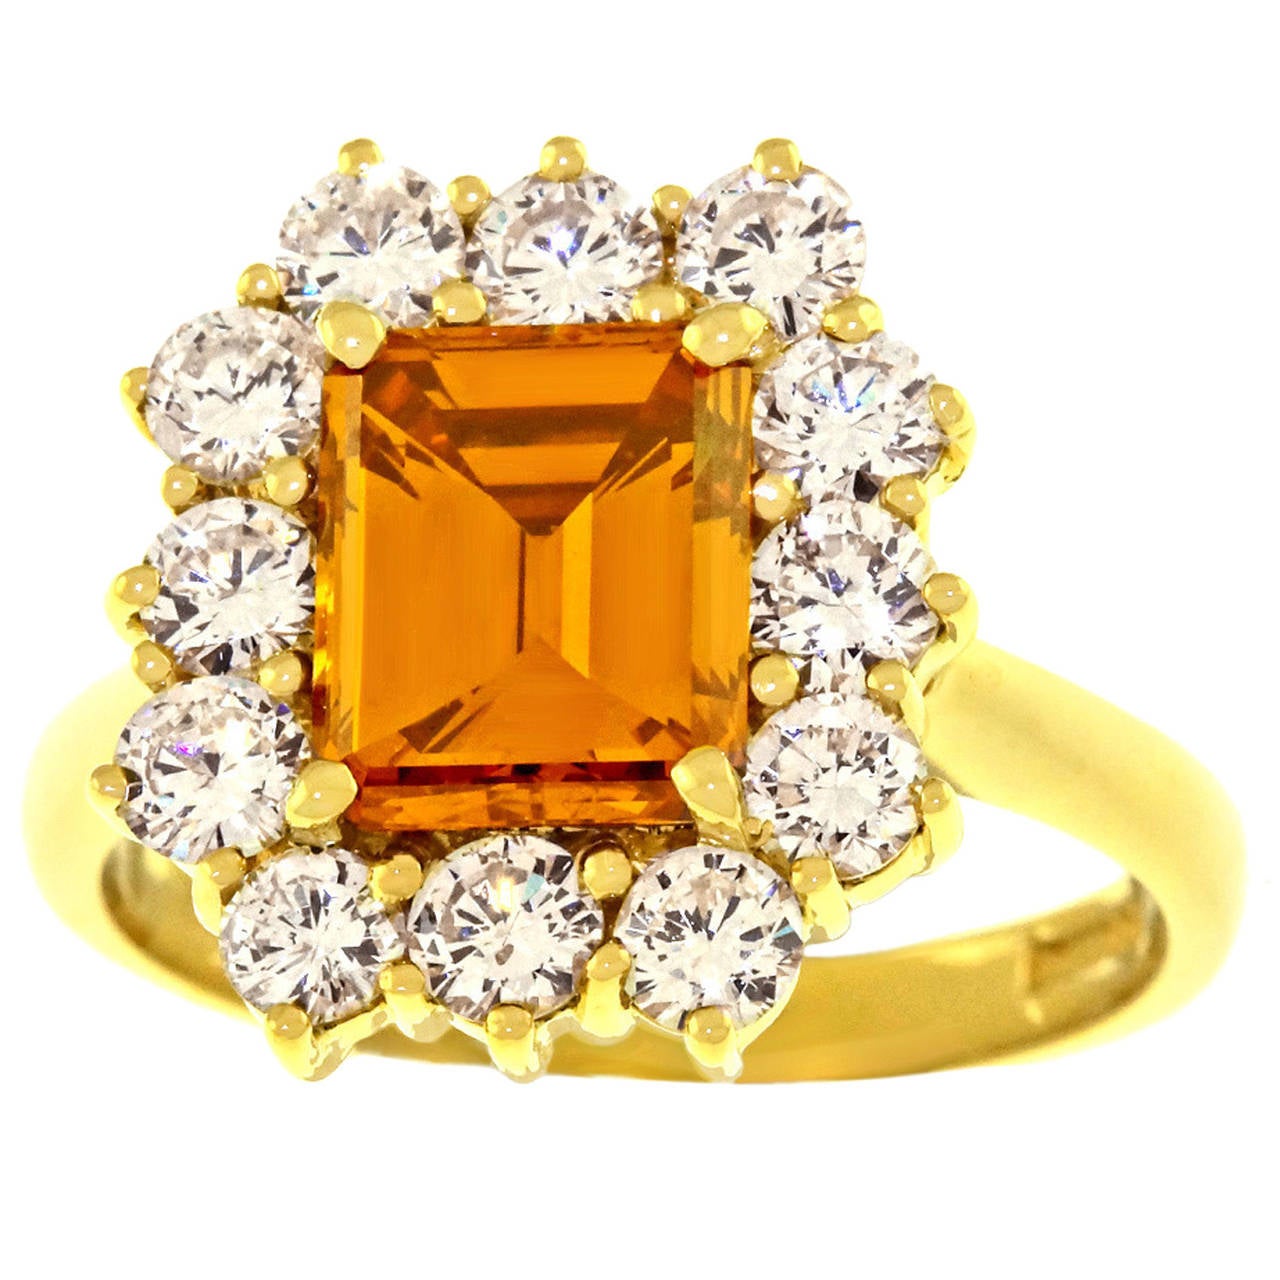 1.98 Carat Deep Brown Orange Diamond Ring